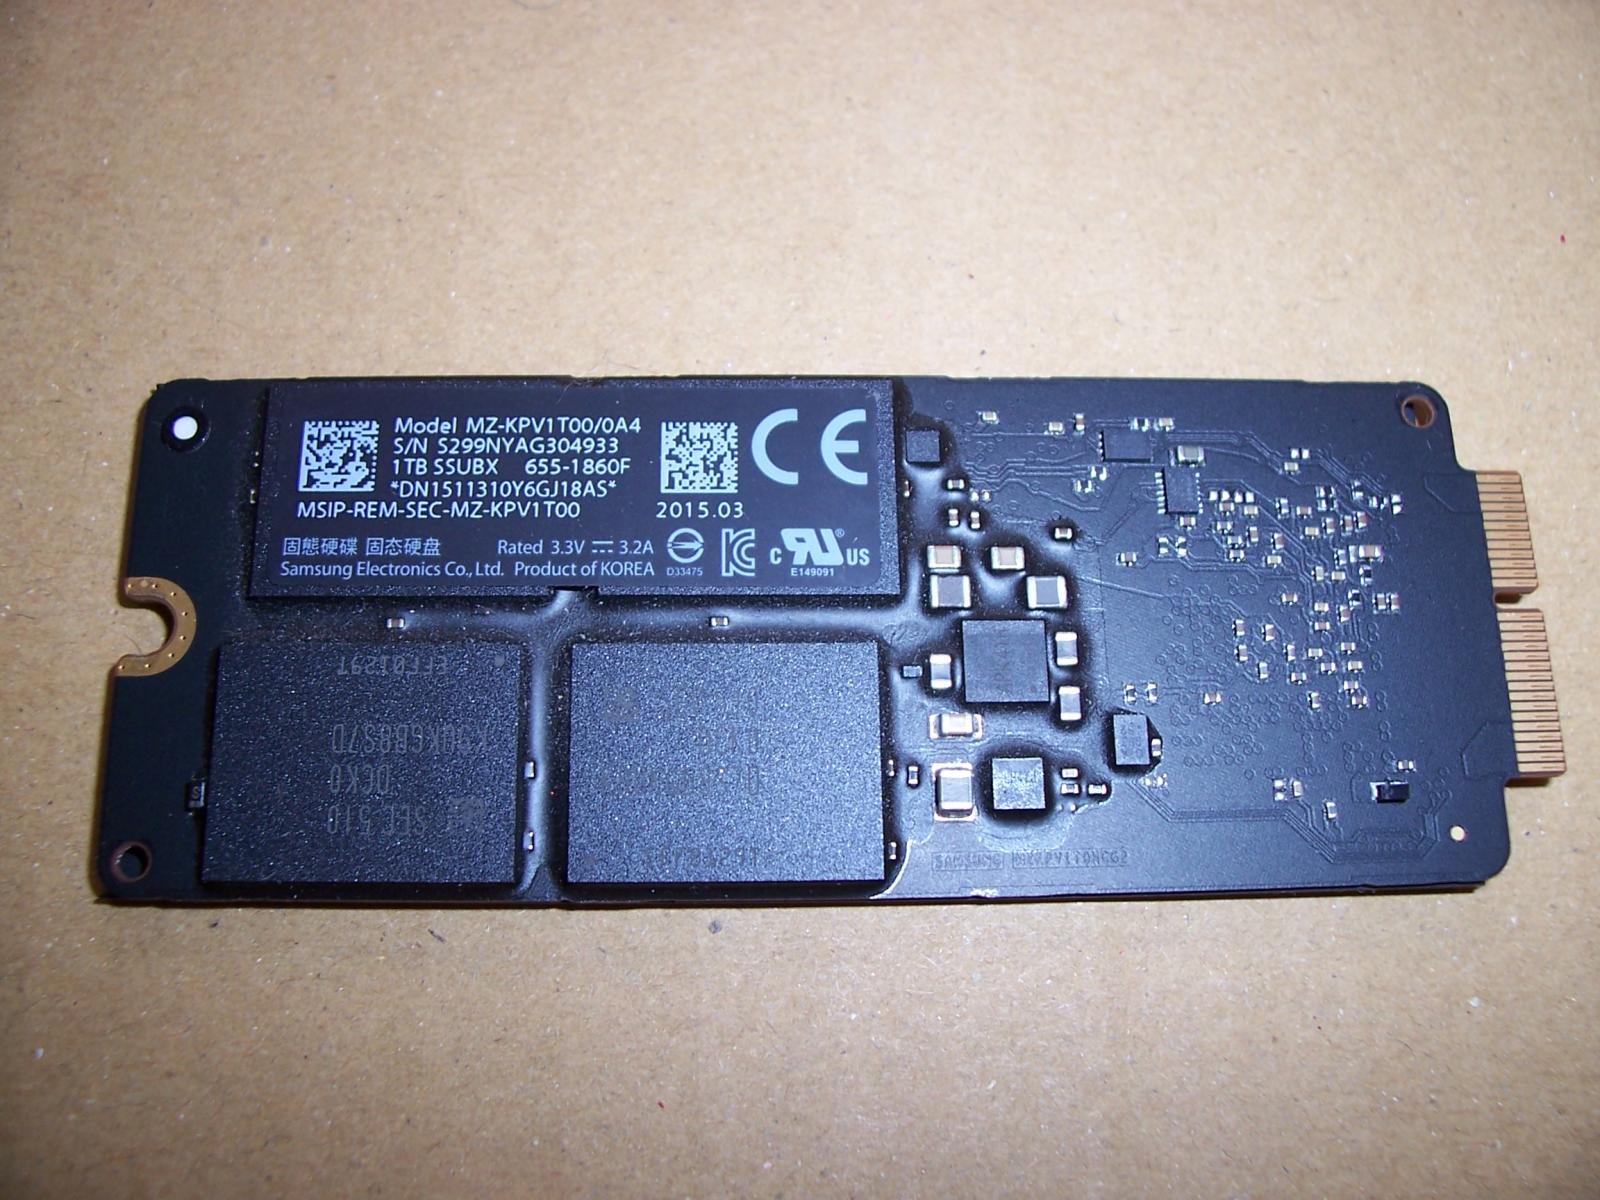 For sale 1TB Macbook Pro 2015 SSD MZ-KPV1T00/0A4 SSUBX 665-1860F working pull